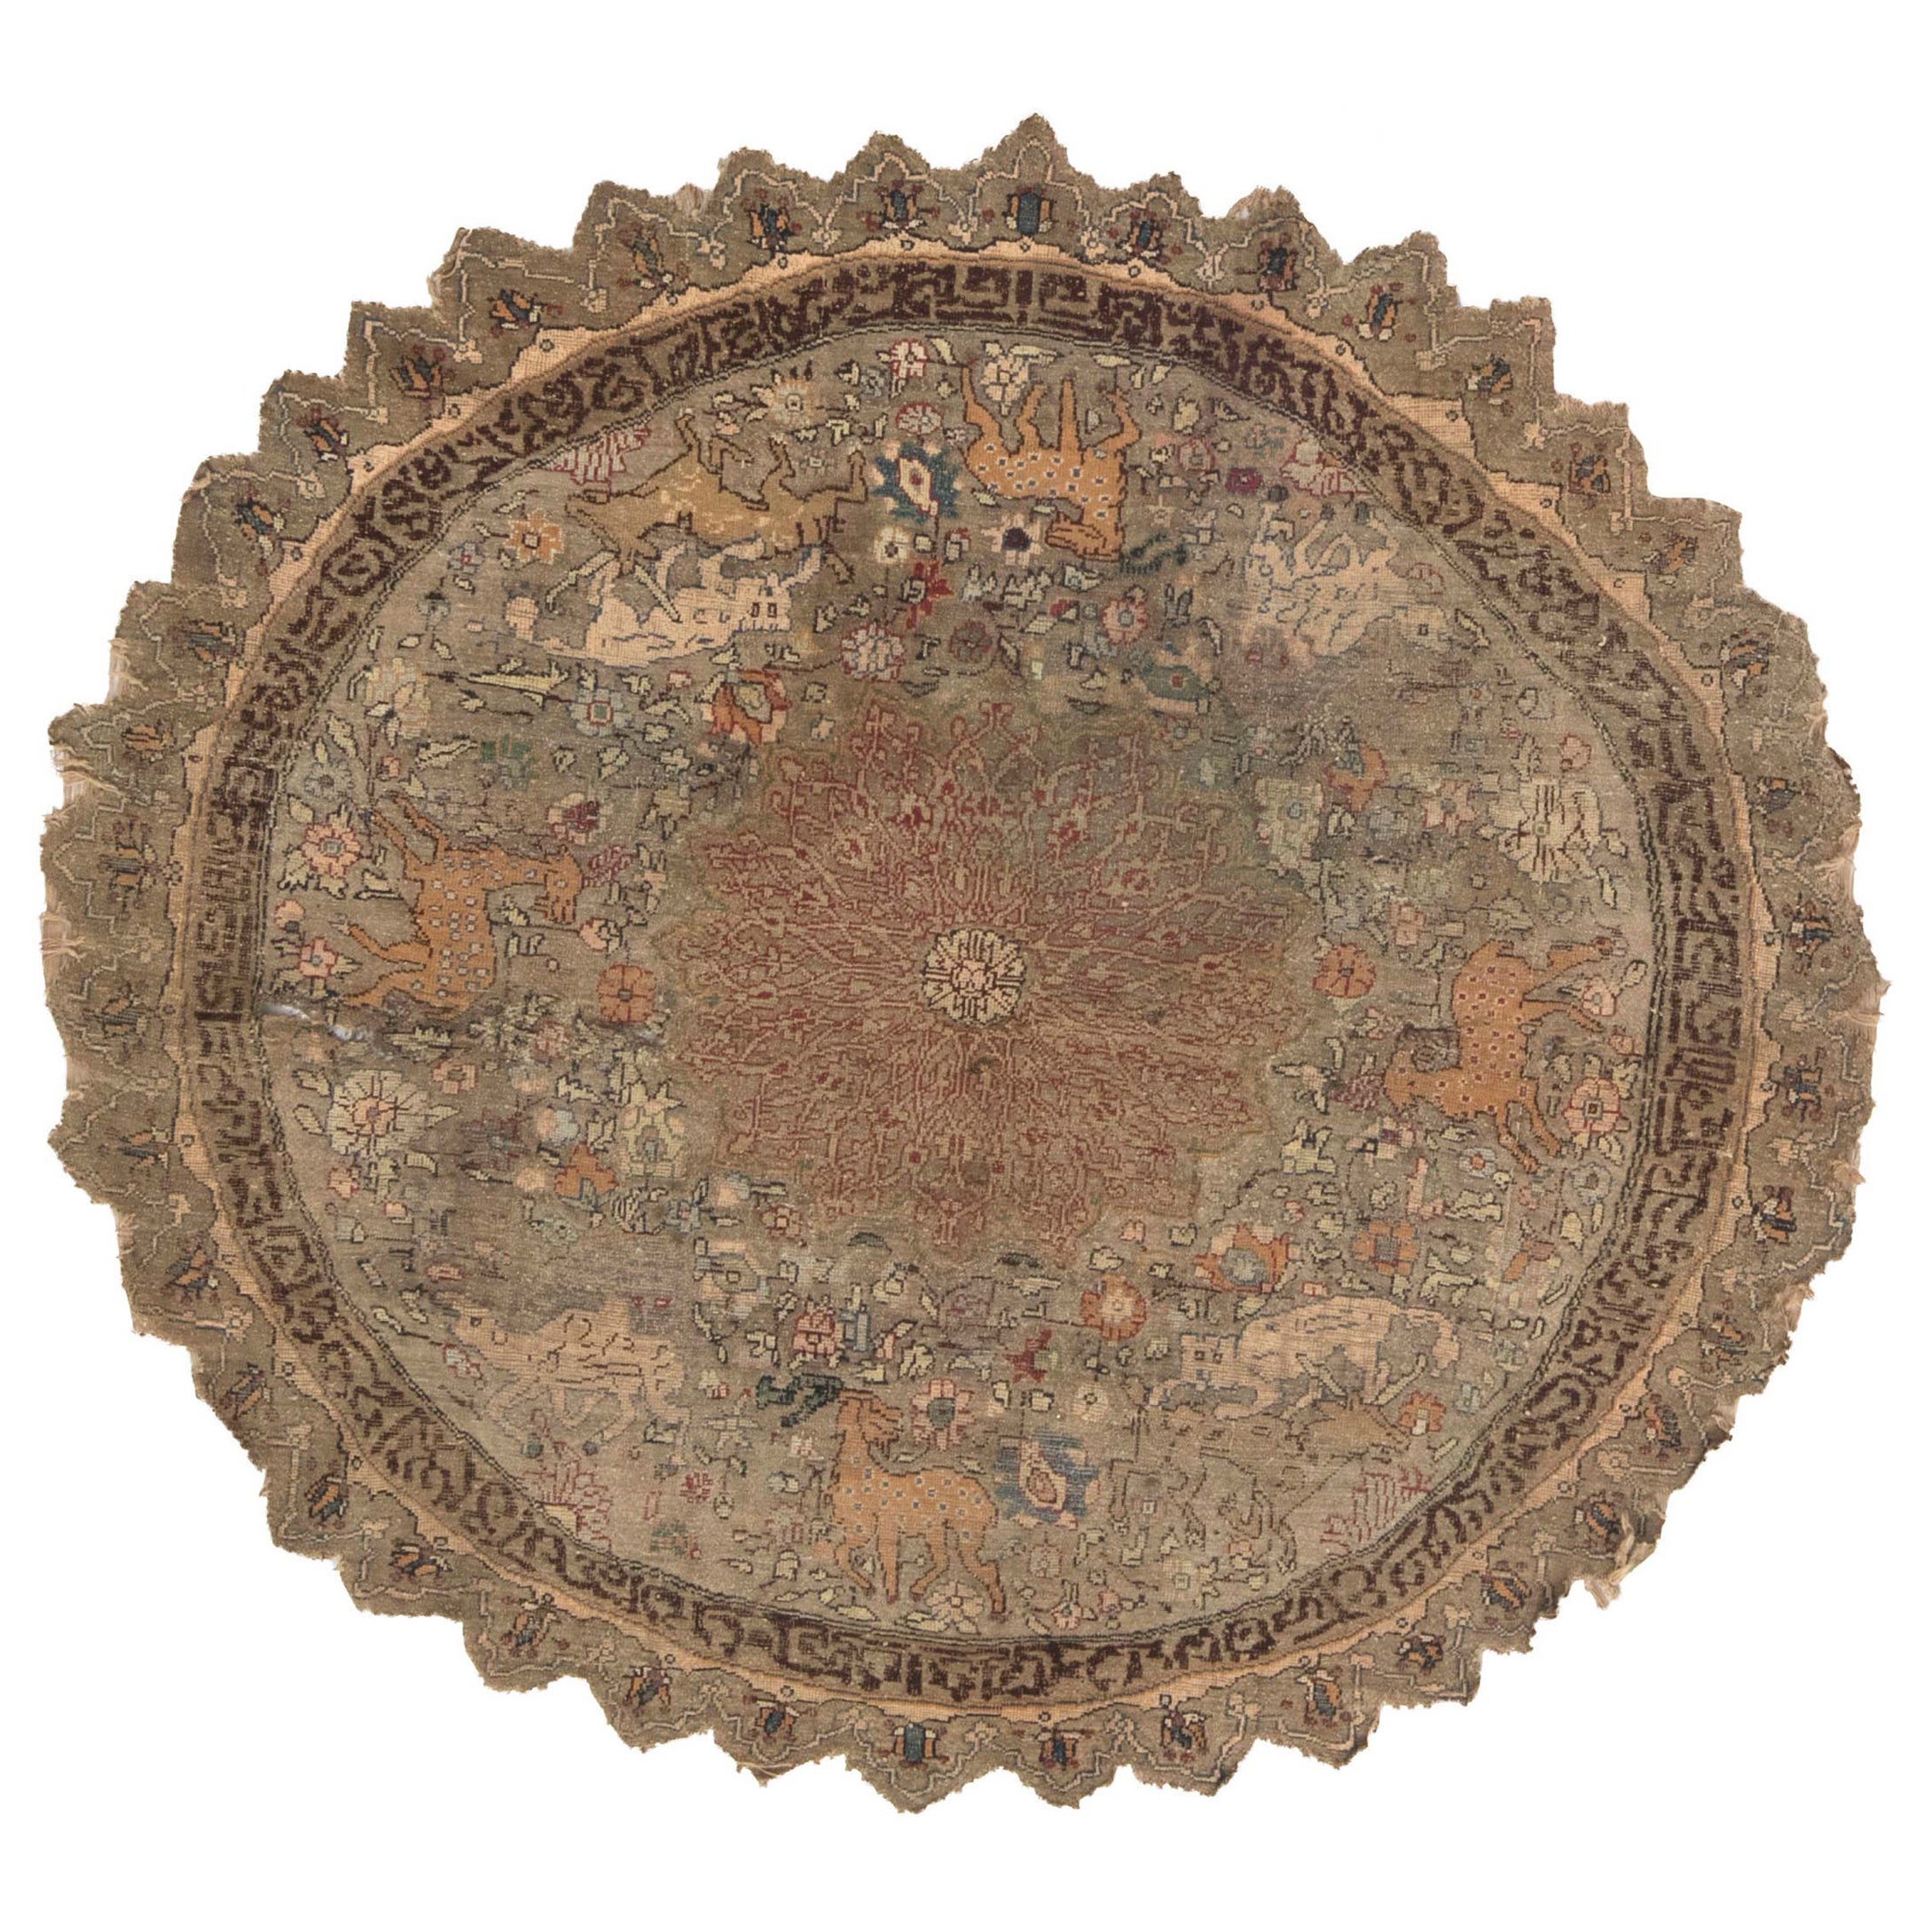 Runder türkischer Seiden-, Metallfaden-Teppich aus dem 19. Jahrhundert